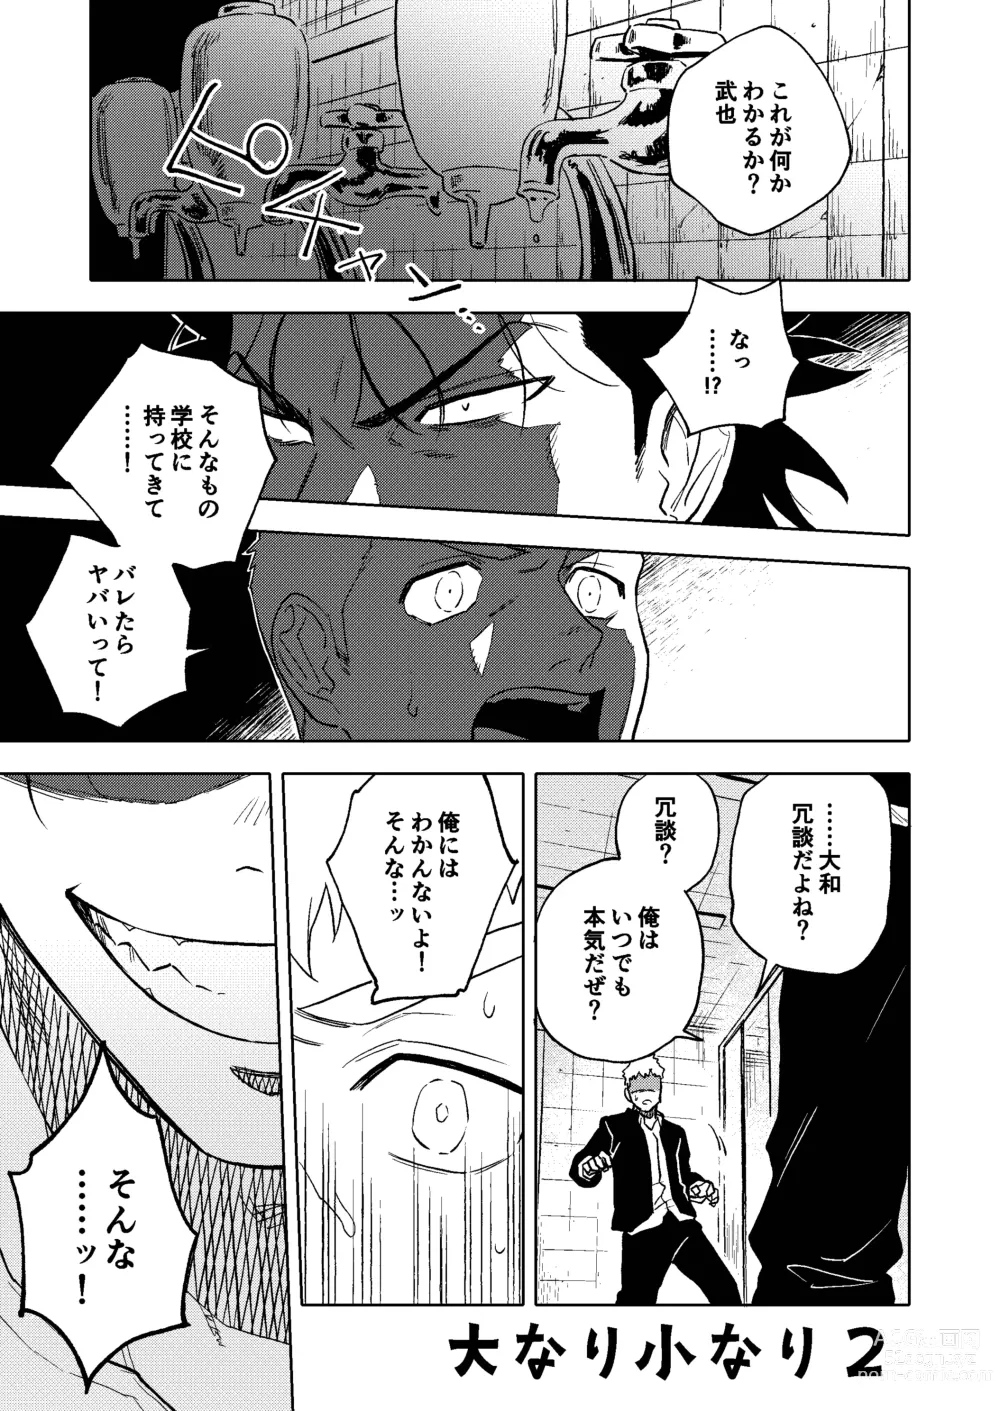 Page 2 of doujinshi Dainarishounari 2